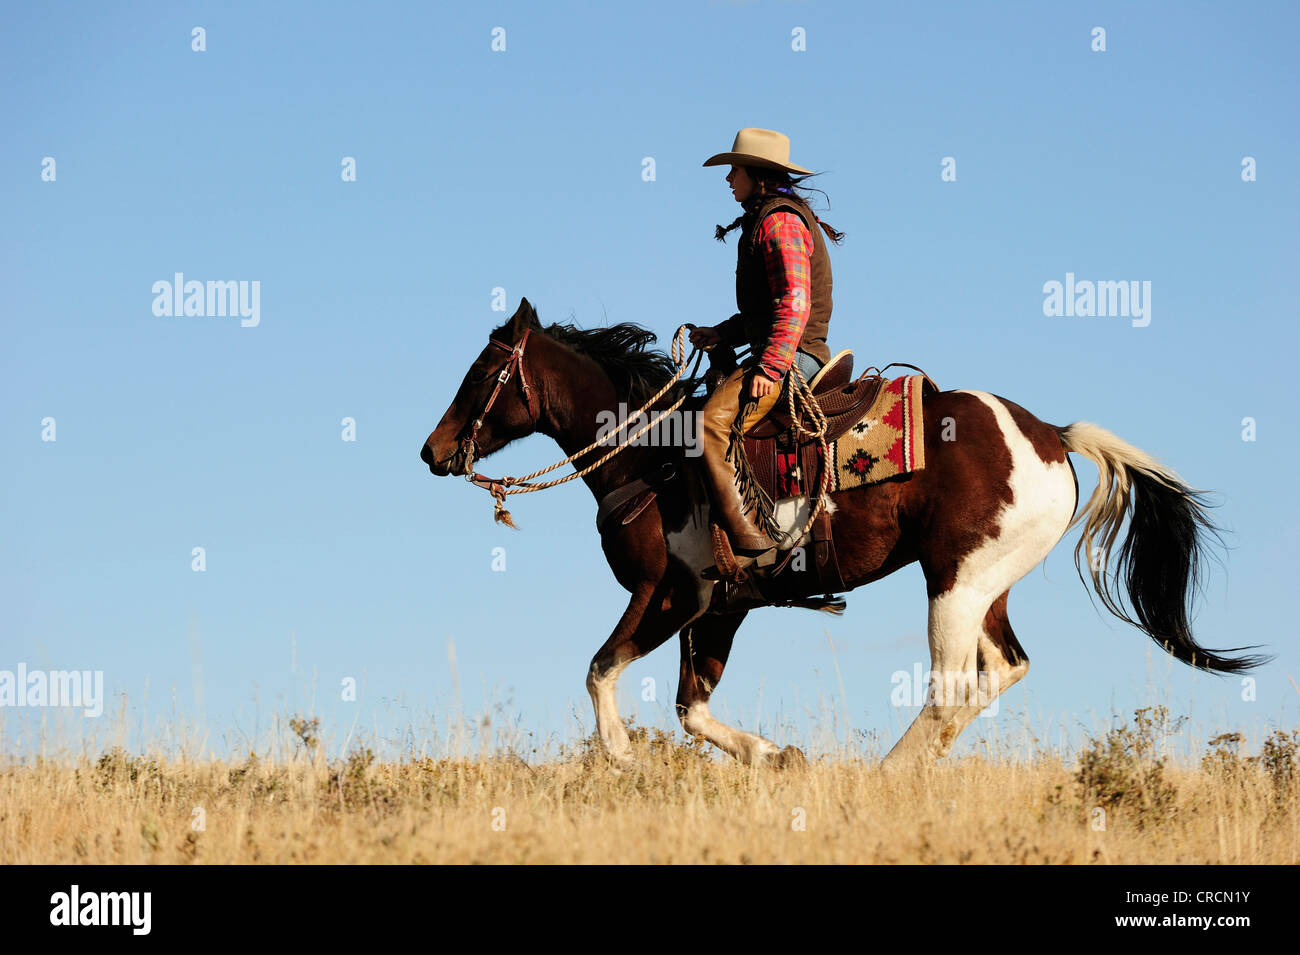 Cowgirl reitet durch die Prärie, Saskatchewan, Kanada, Nordamerika Stockfoto